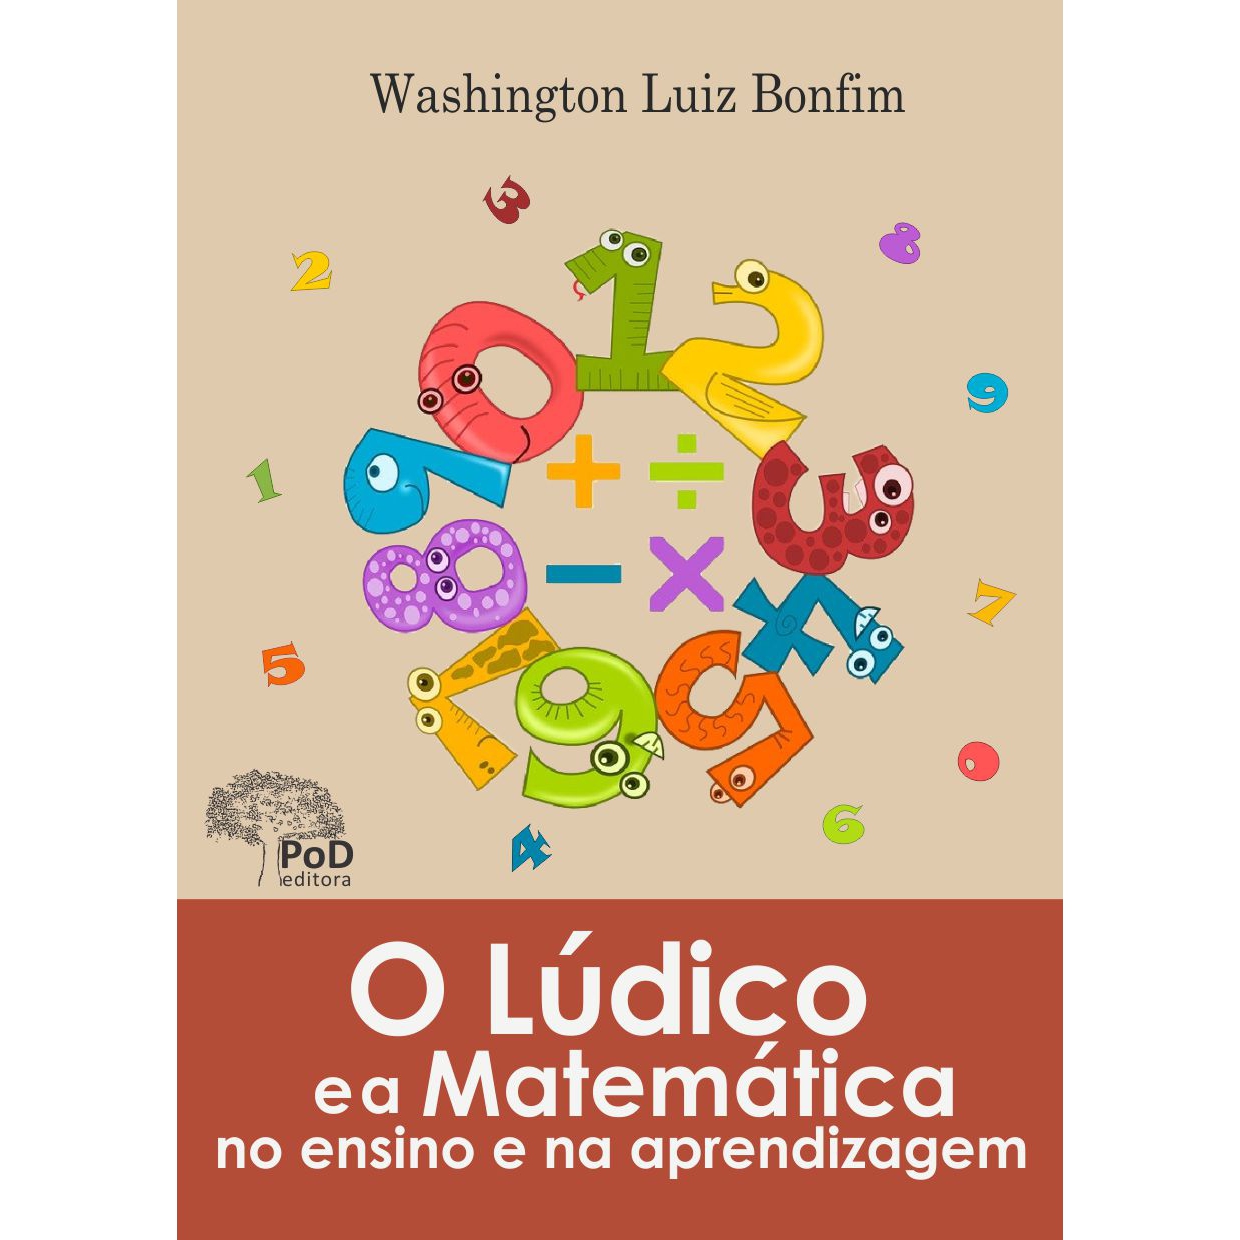 O lúdico e o ensino da matemática na Educação Infantil